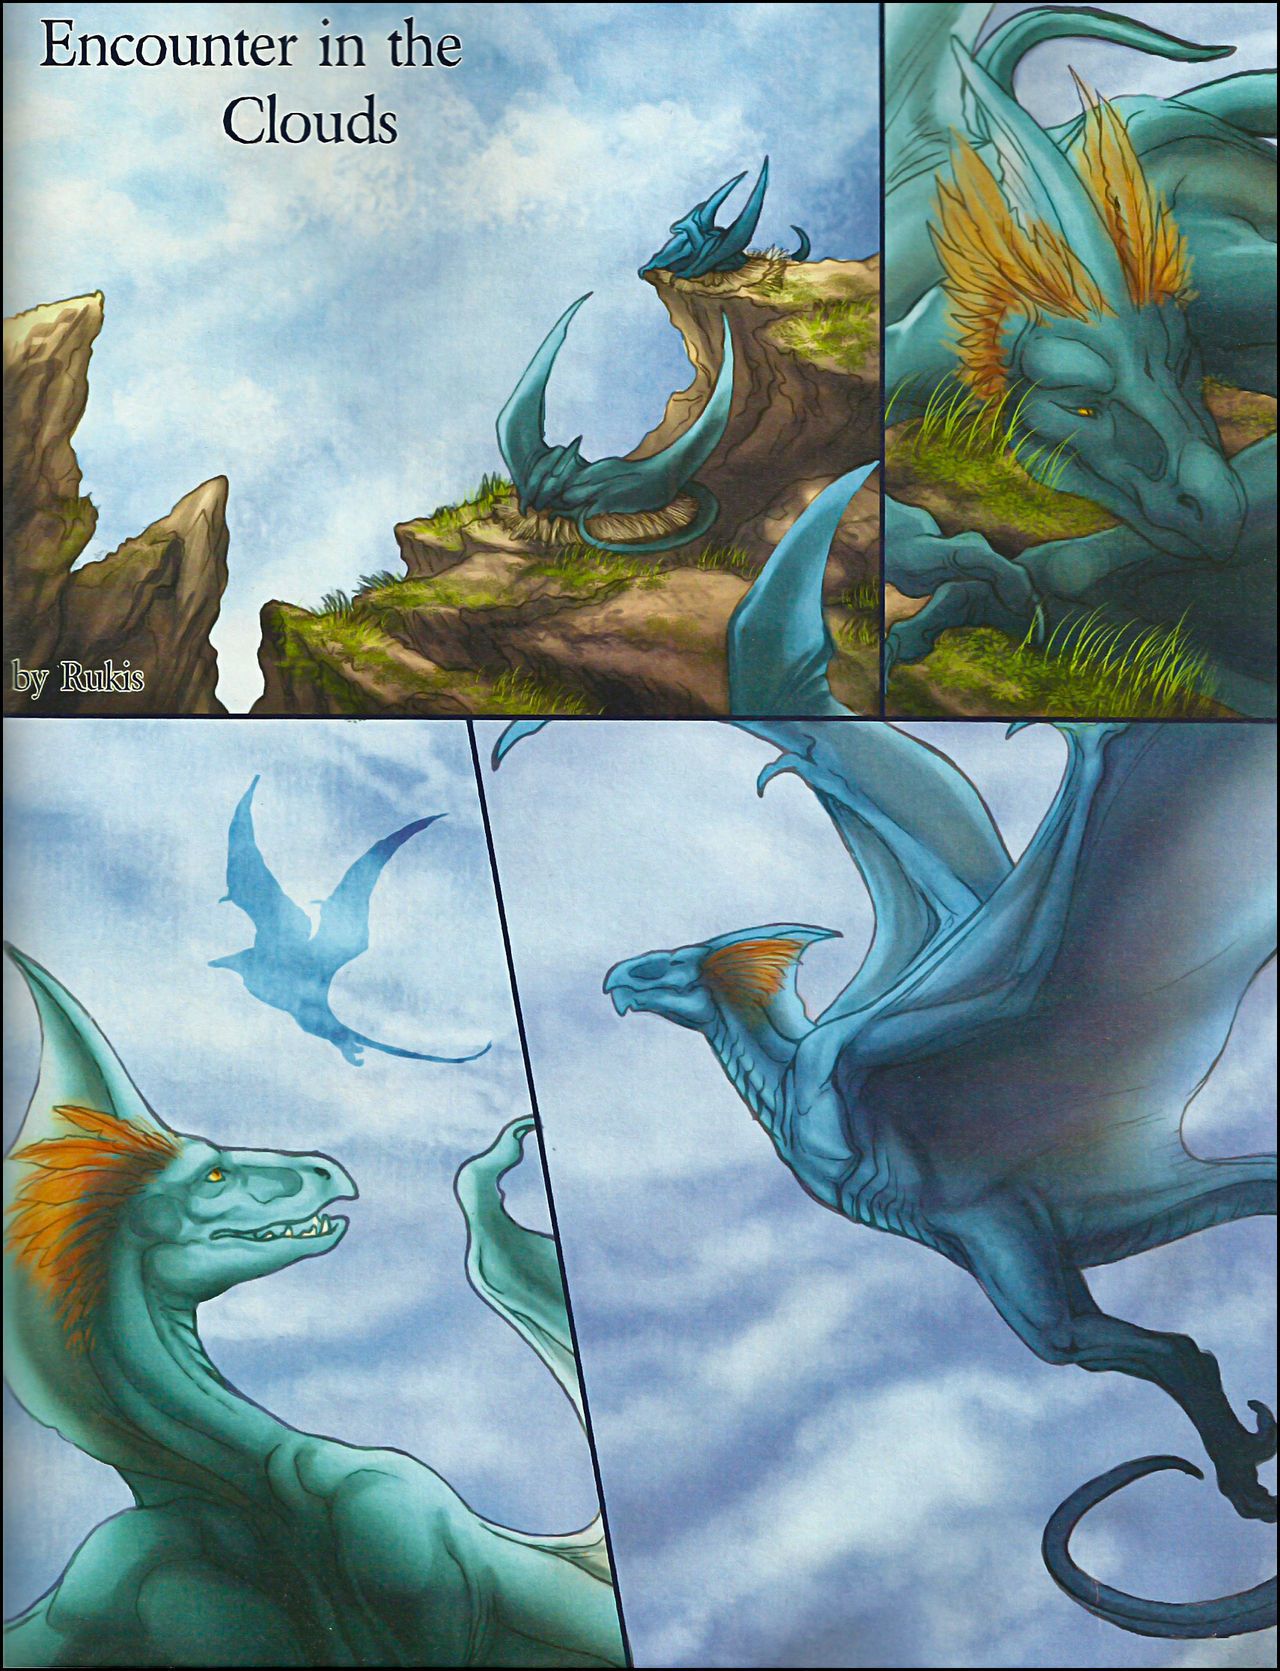 dragon\'s hoard số lượng 2 (composition những khác nhau artists)